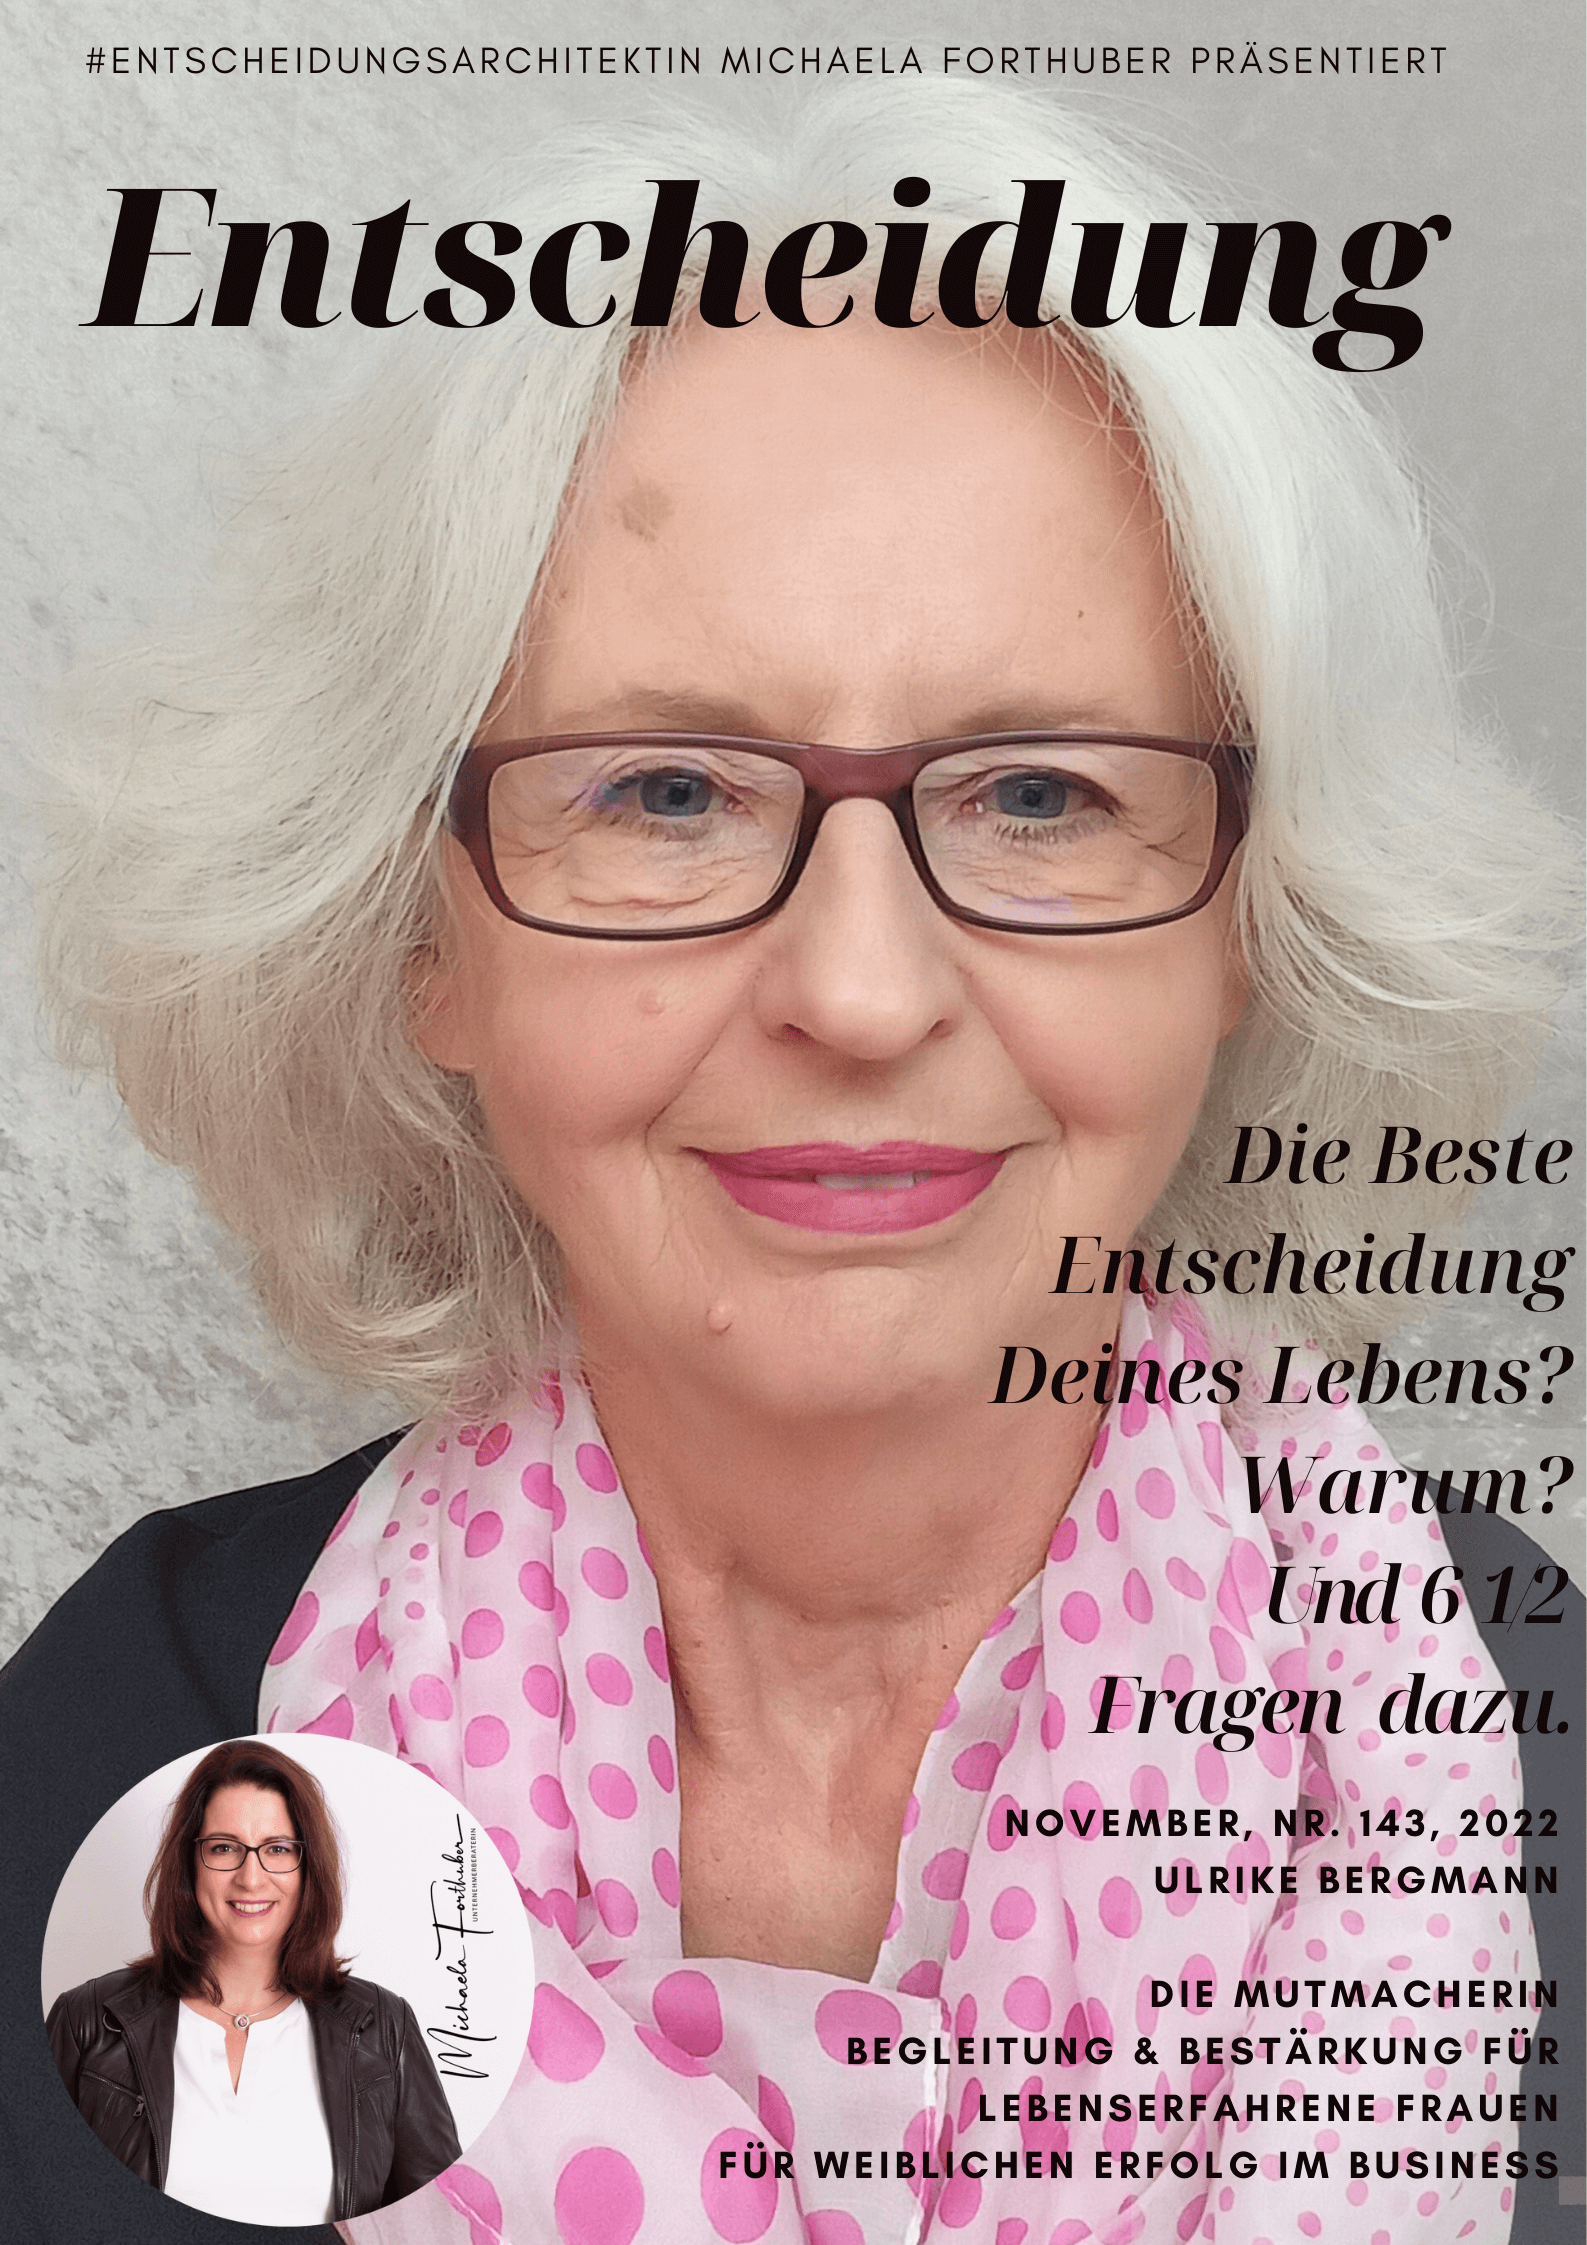 Blog Interview Entscheiden Cover Michaela Forthuber #Entscheidungsarchitektin mit Ulrike Bergmann